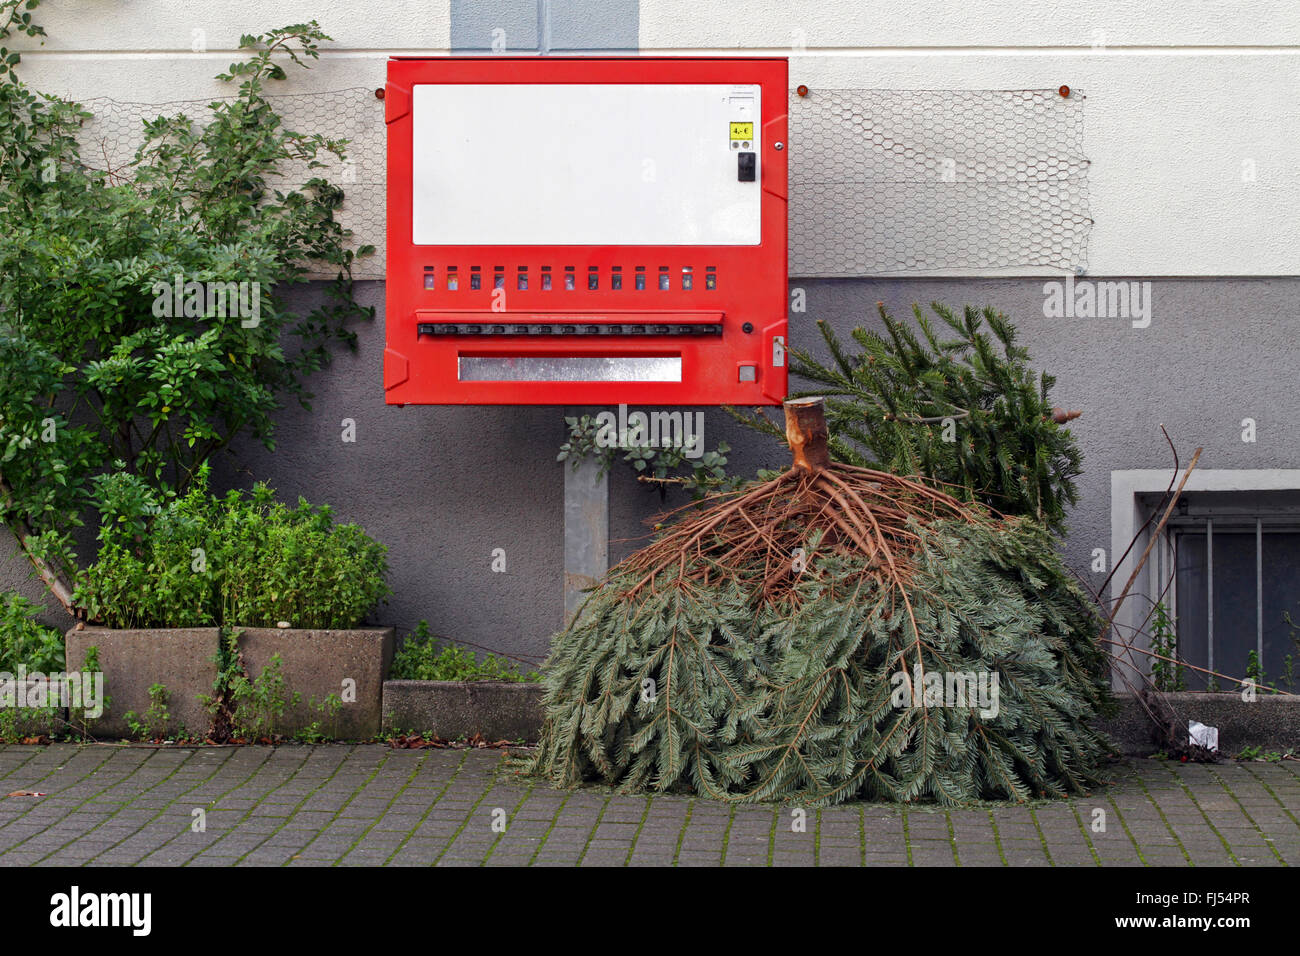 Viejo árbol de Navidad junto al autómata de cigarrillo en la acera, Alemania Foto de stock